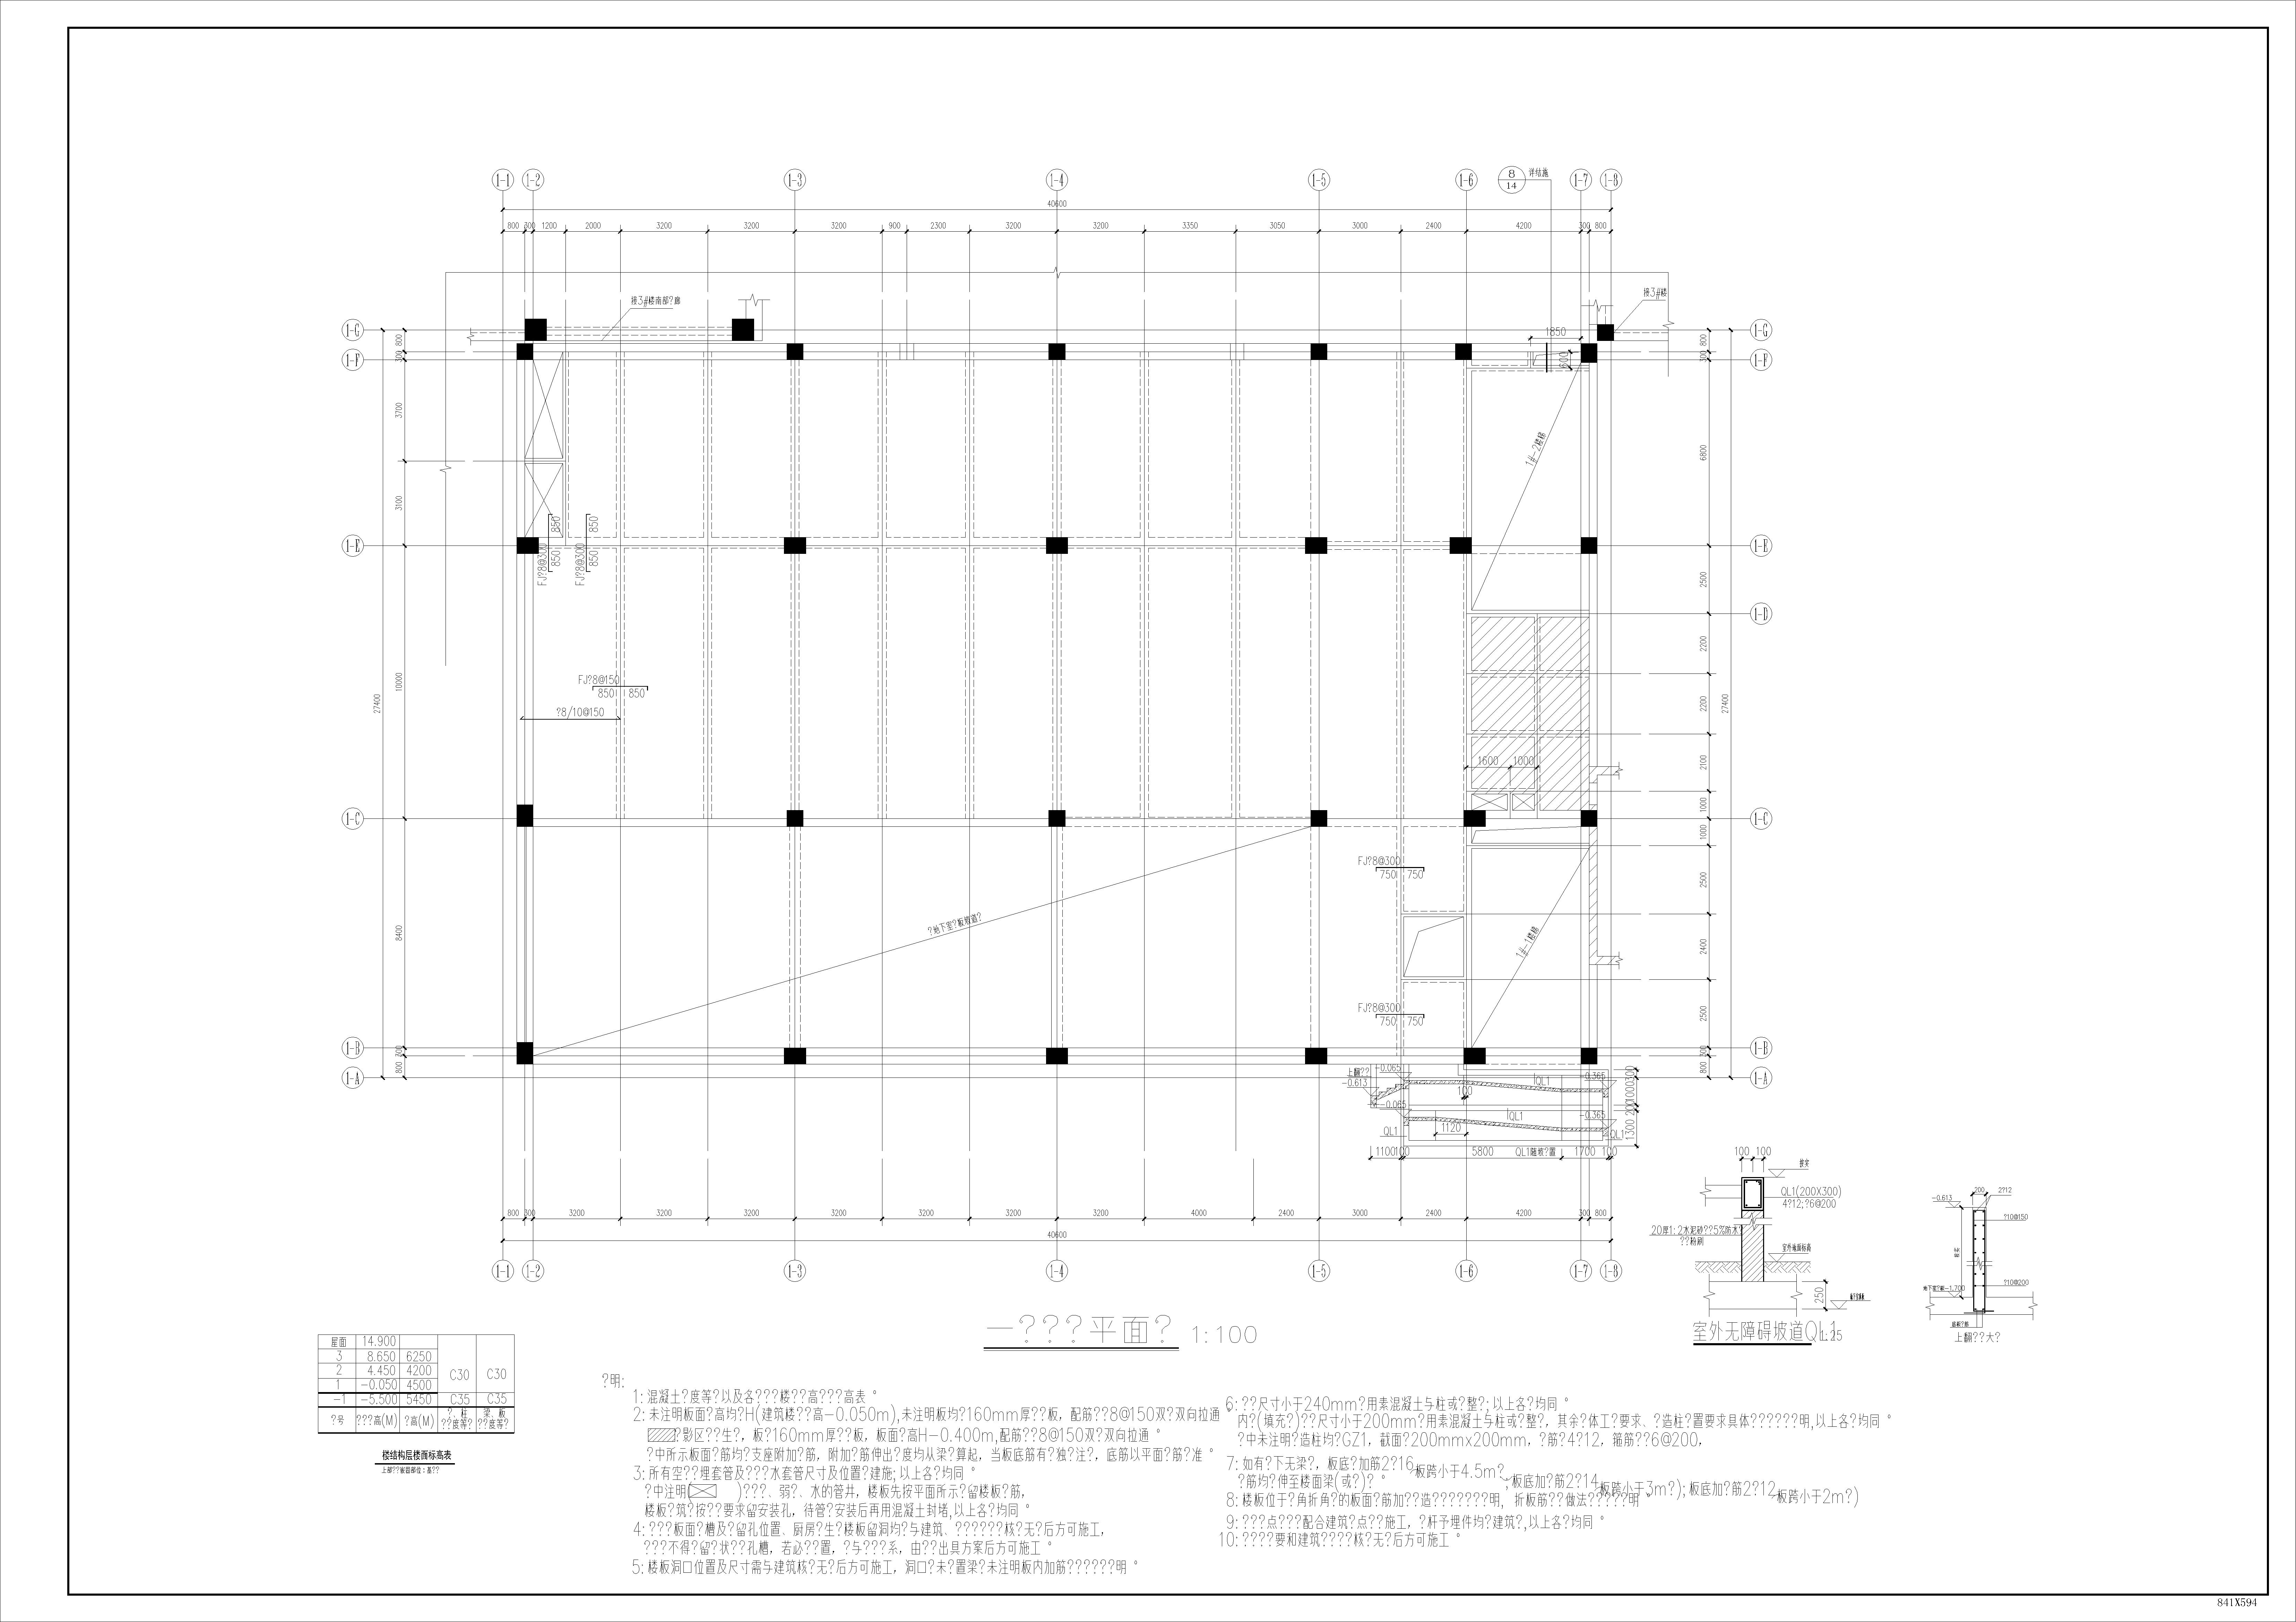 教学楼 报告楼 体艺楼 钢结构连廊 屋顶网架-结构图